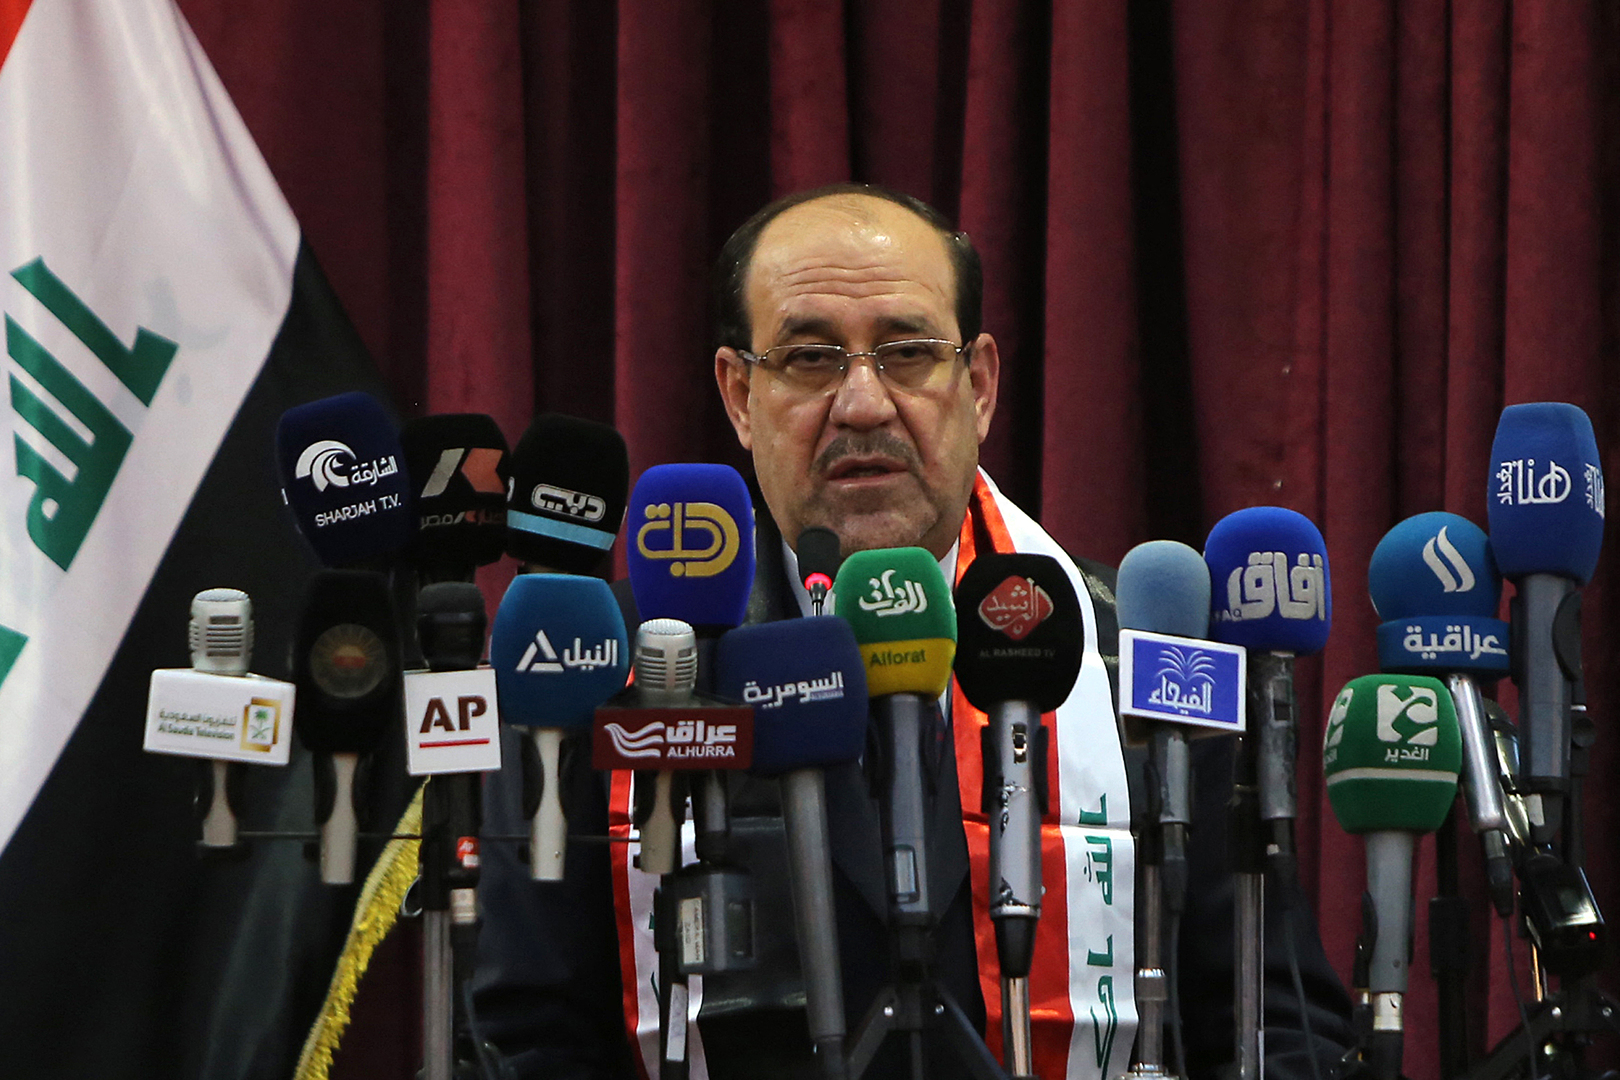 المالكي: لا حل للبرلمان العراقي ولا انتخابات مبكرة إلا بعودة مجلس النواب للانعقاد